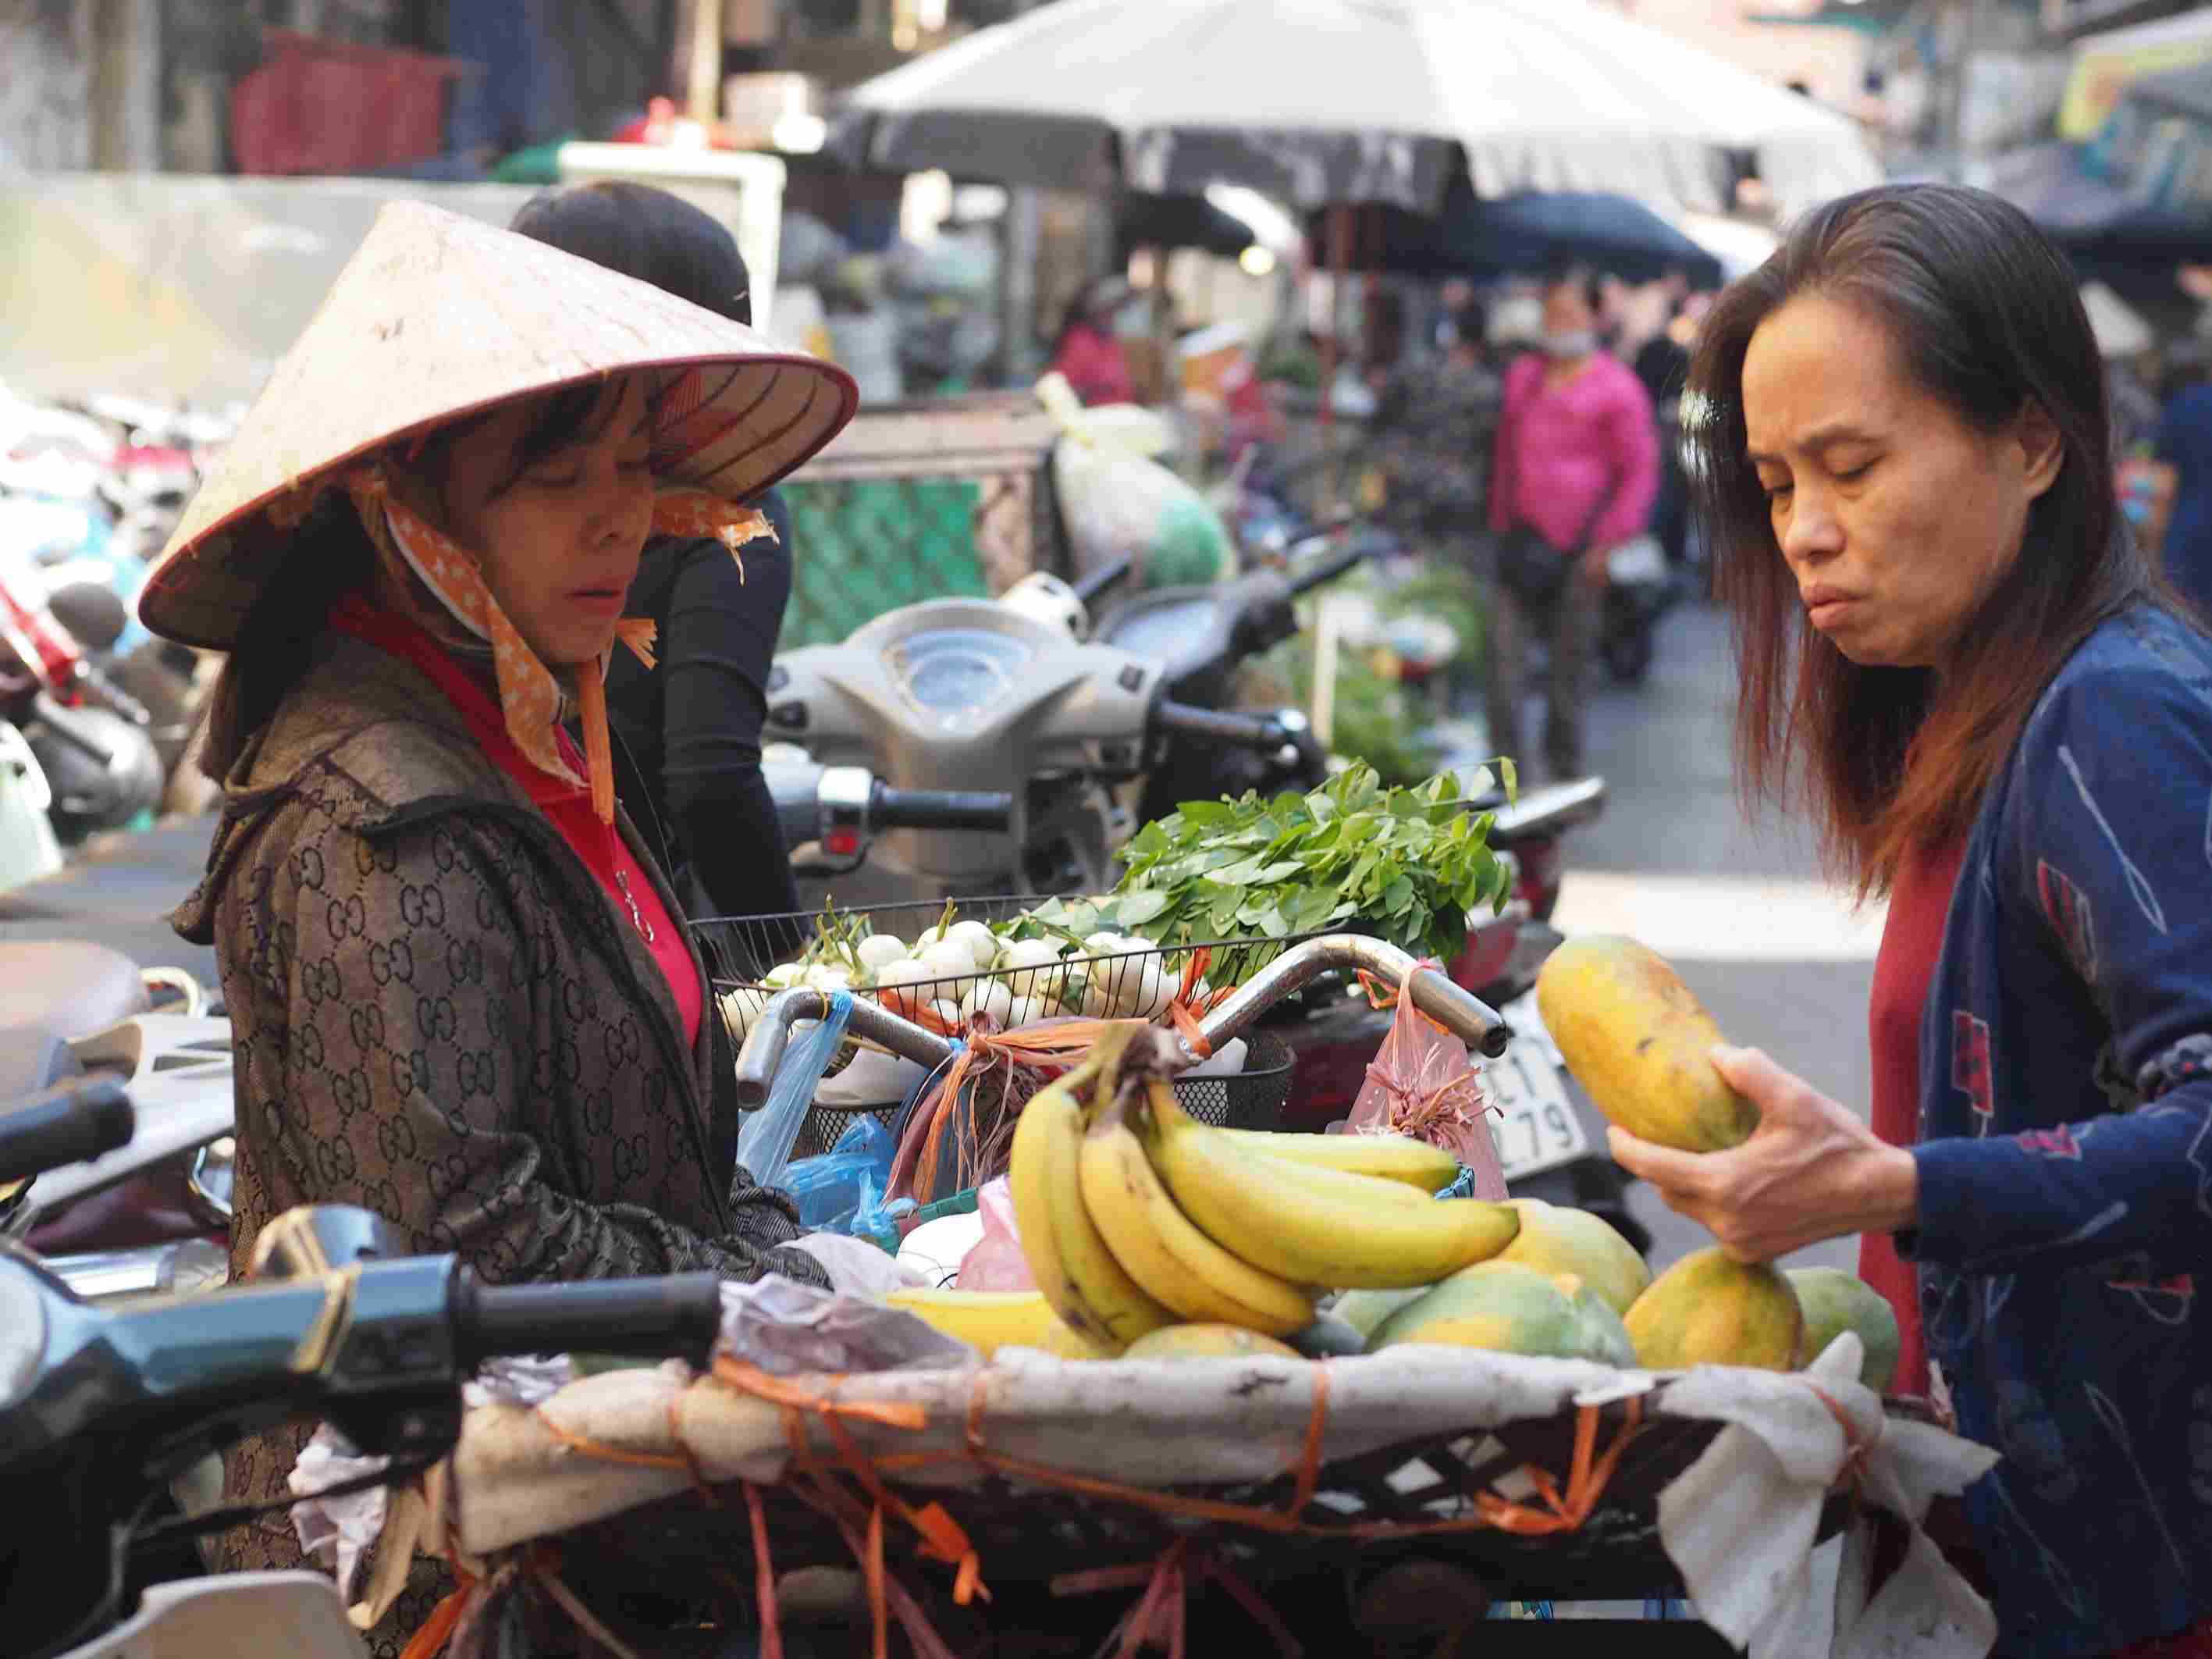 Bà Nguyễn Thị Hoa (TP Hà Nội) cho biết: “Xe chở hàng của tôi là qua quả của nhà trồng được, vì nhiều ăn không hết nên đem ra chợ bán kiếm thêm“.